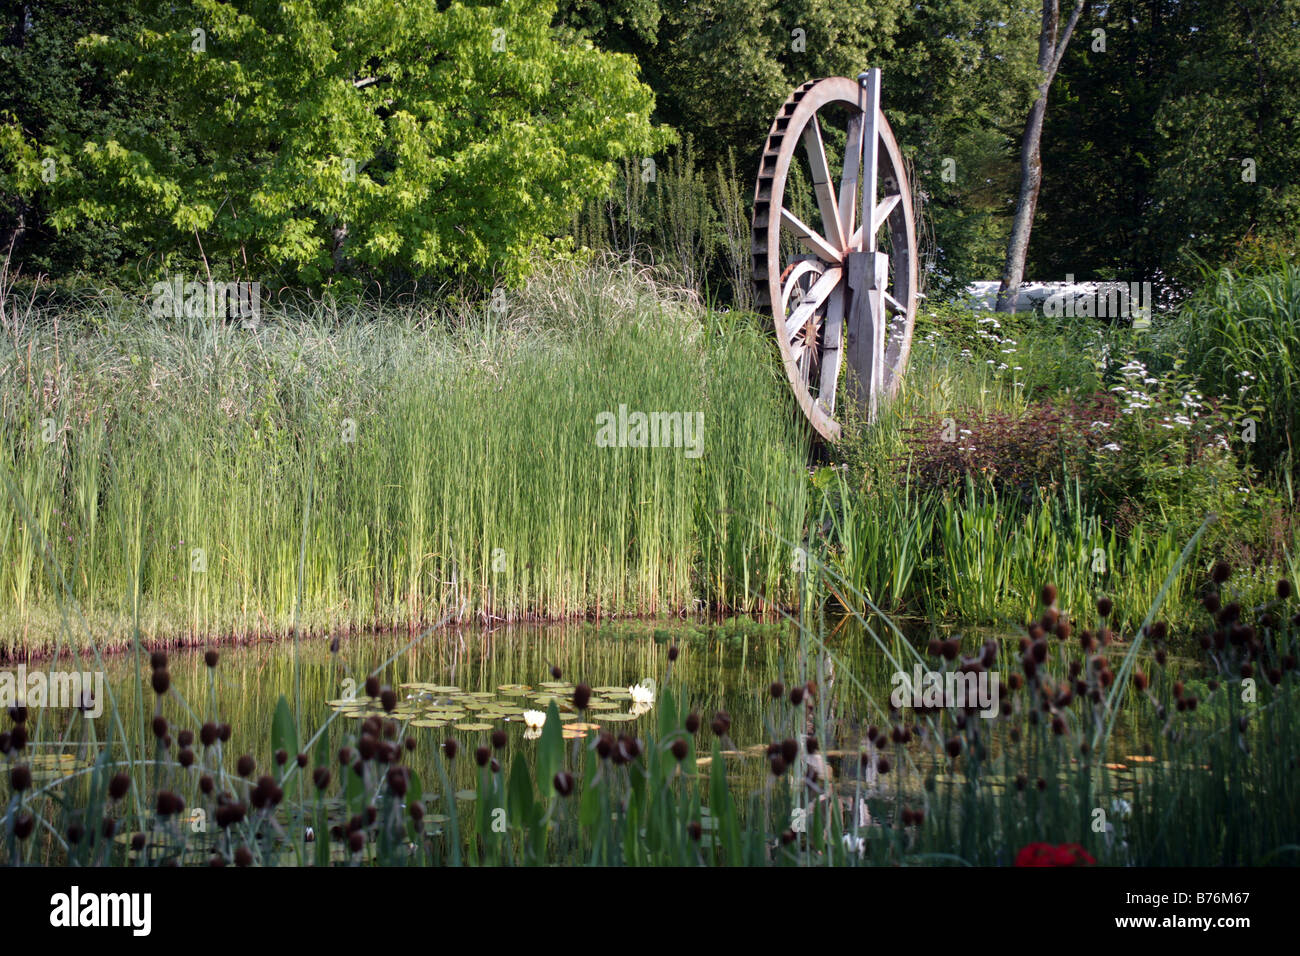 Jardín Acuático de Chaumont-sur-Loire Festival Internacional de Jardines de Francia Foto de stock